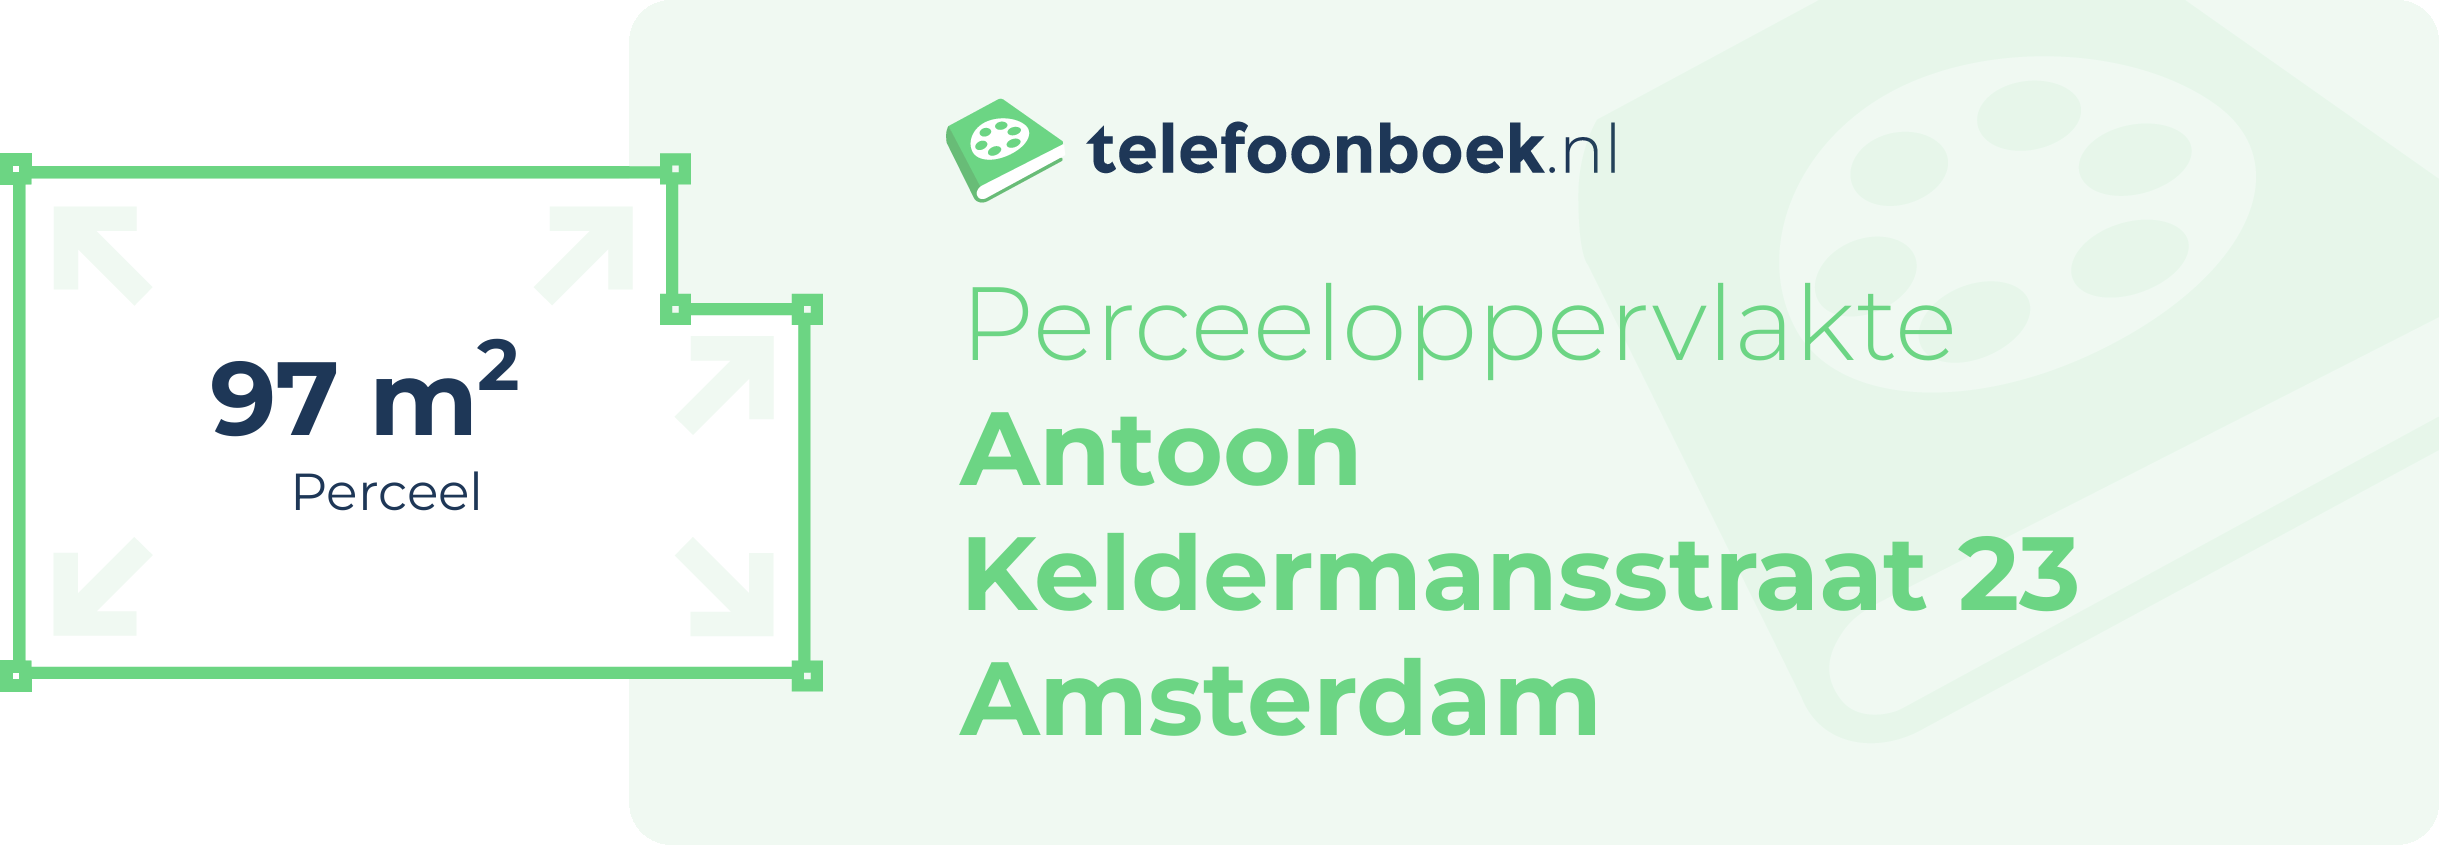 Perceeloppervlakte Antoon Keldermansstraat 23 Amsterdam